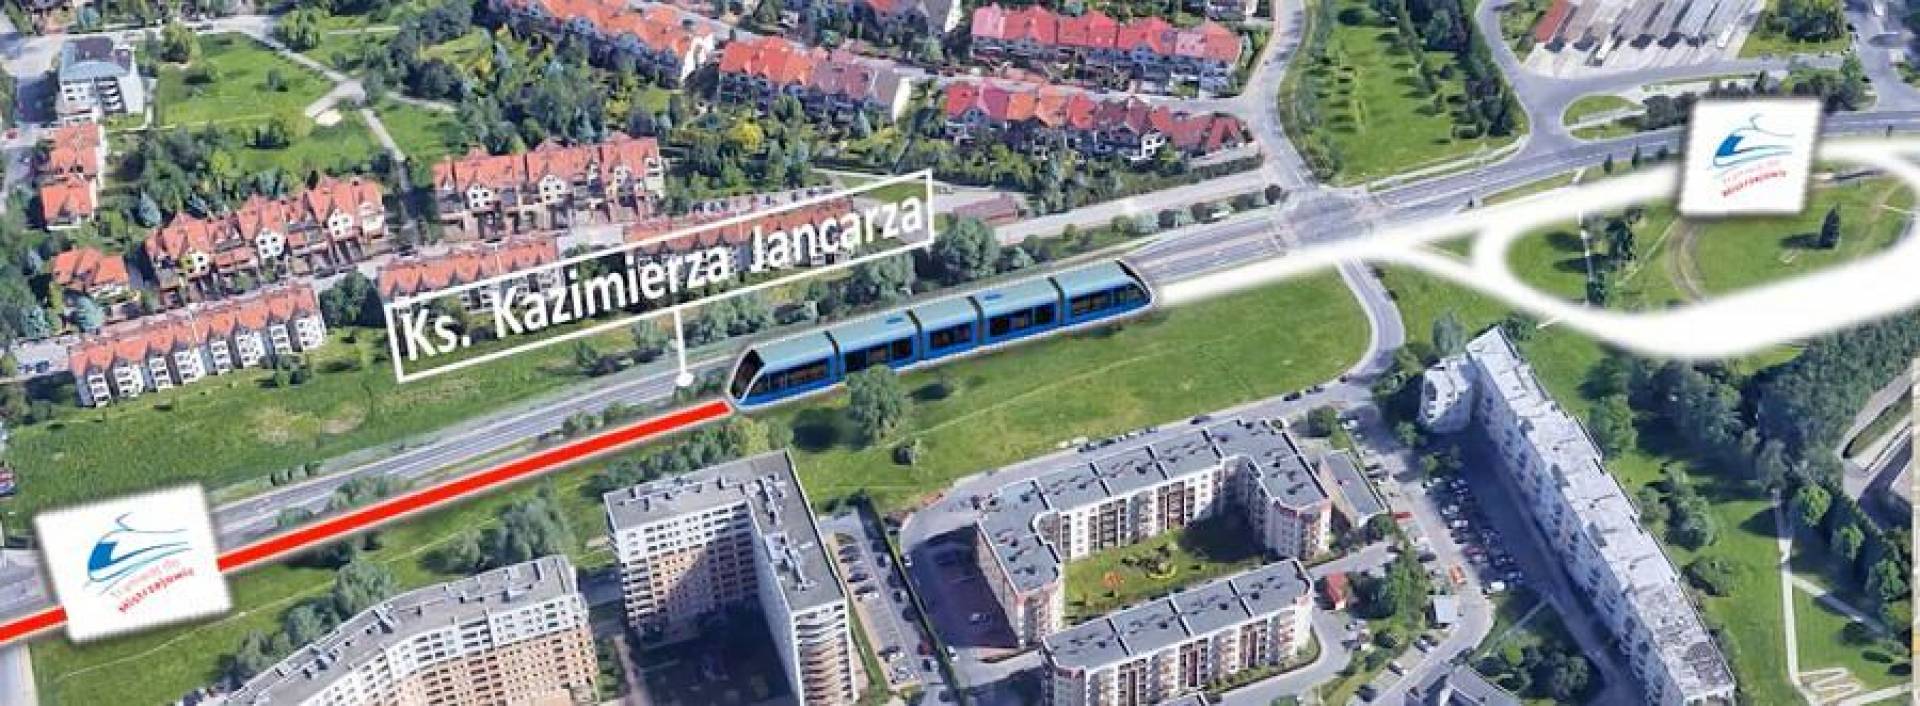 Dwa warianty tunelu tramwajowego do Mistrzejowic. Pierwsza taka inwestycja